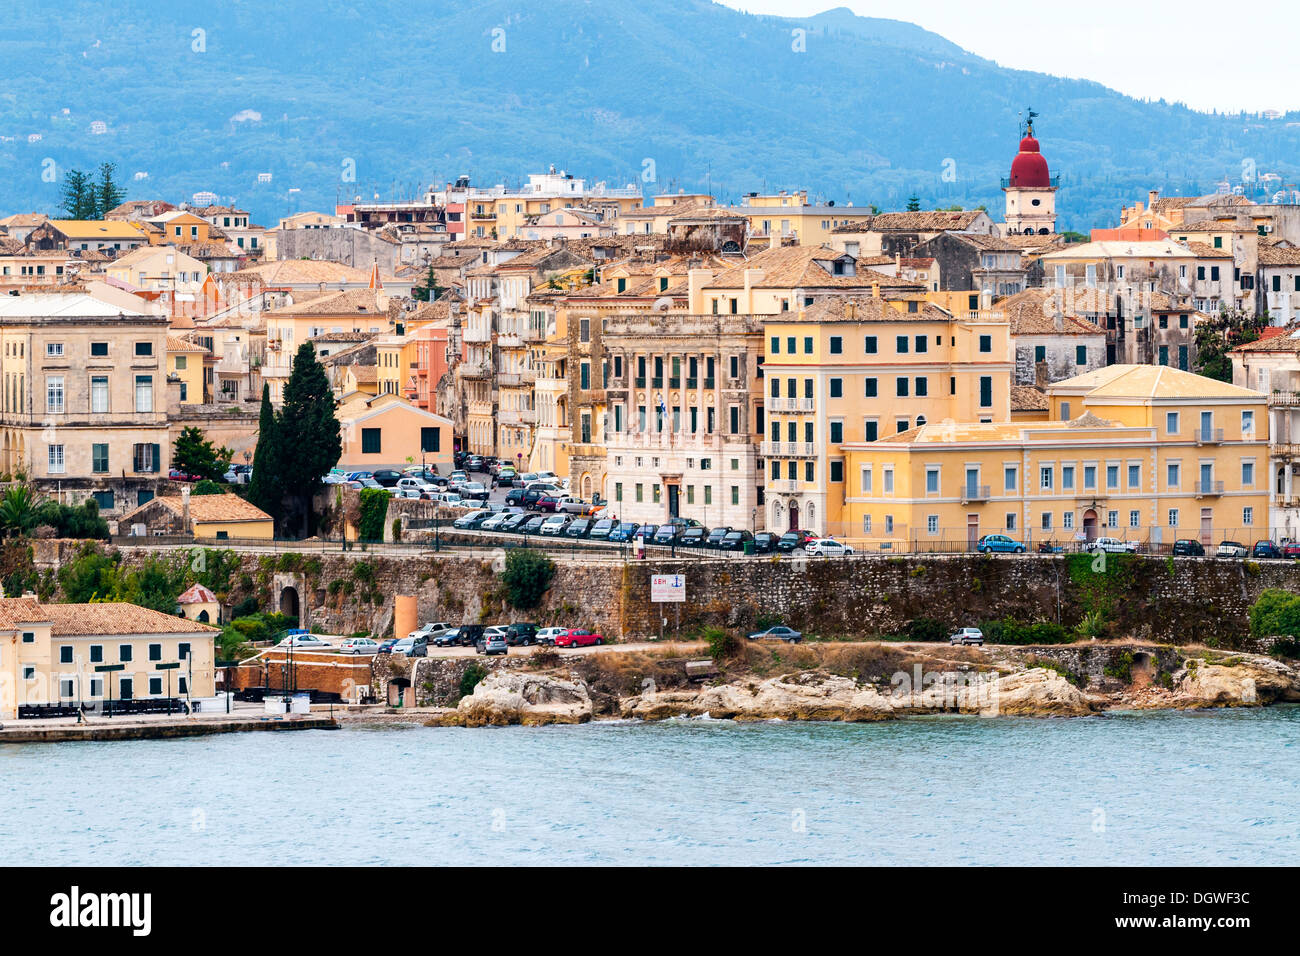 Altstadt, Korfu, Ionische Inseln, griechische Inseln, Griechenland, Europa Stockfoto